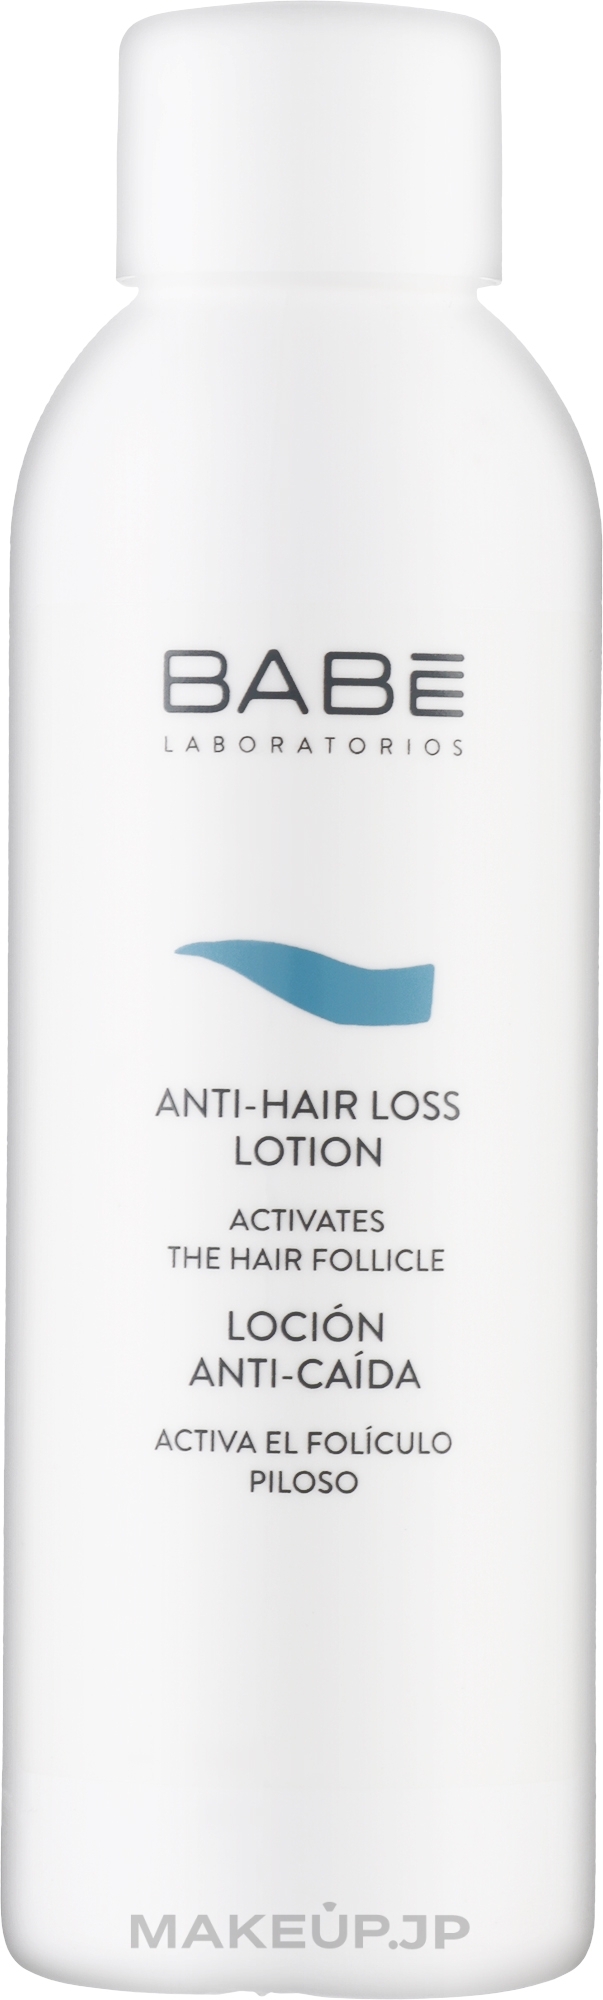 Anti Hair Loss Lotion - Babe Laboratorios Anti-Hair Loss Lotion — photo 100 ml